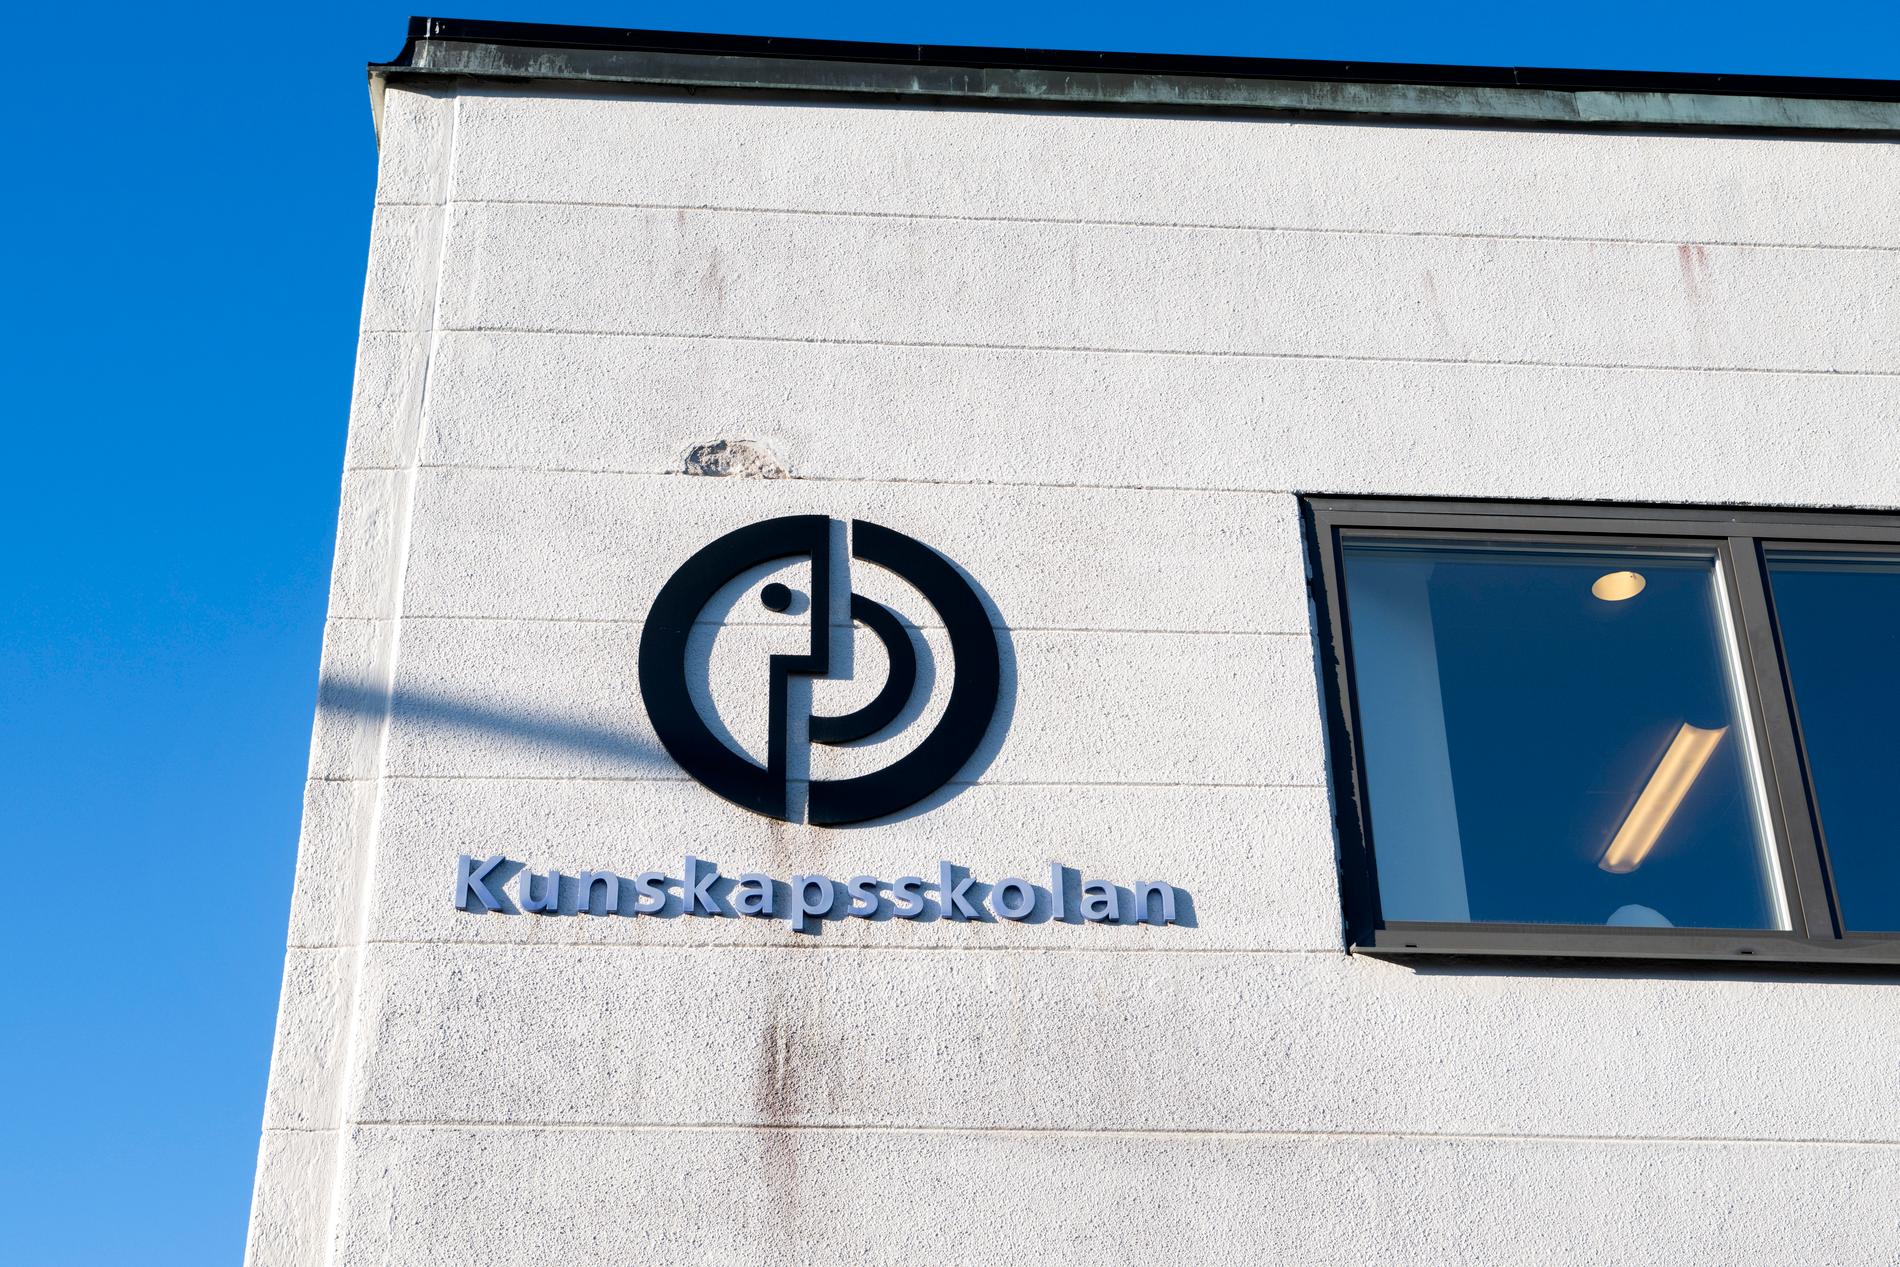 Kunskapsskolan öppnade första skolan i Sverige år 2000 och är i dag en av landets största skolkoncerner med 14 500 elever. 